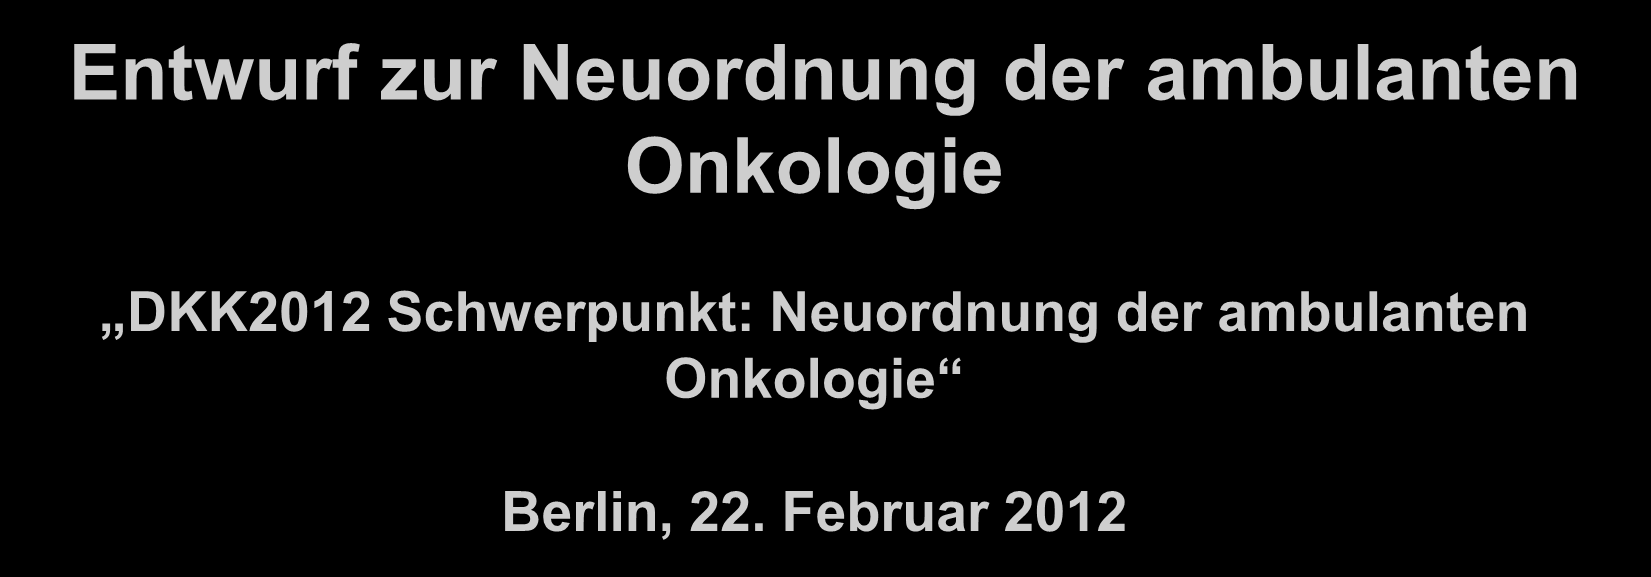 Entwurf zur Neuordnung der ambulanten Onkologie DKK2012 Schwerpunkt: Neuordnung der ambulanten Onkologie Berlin, 22. Februar 2012 Dr.